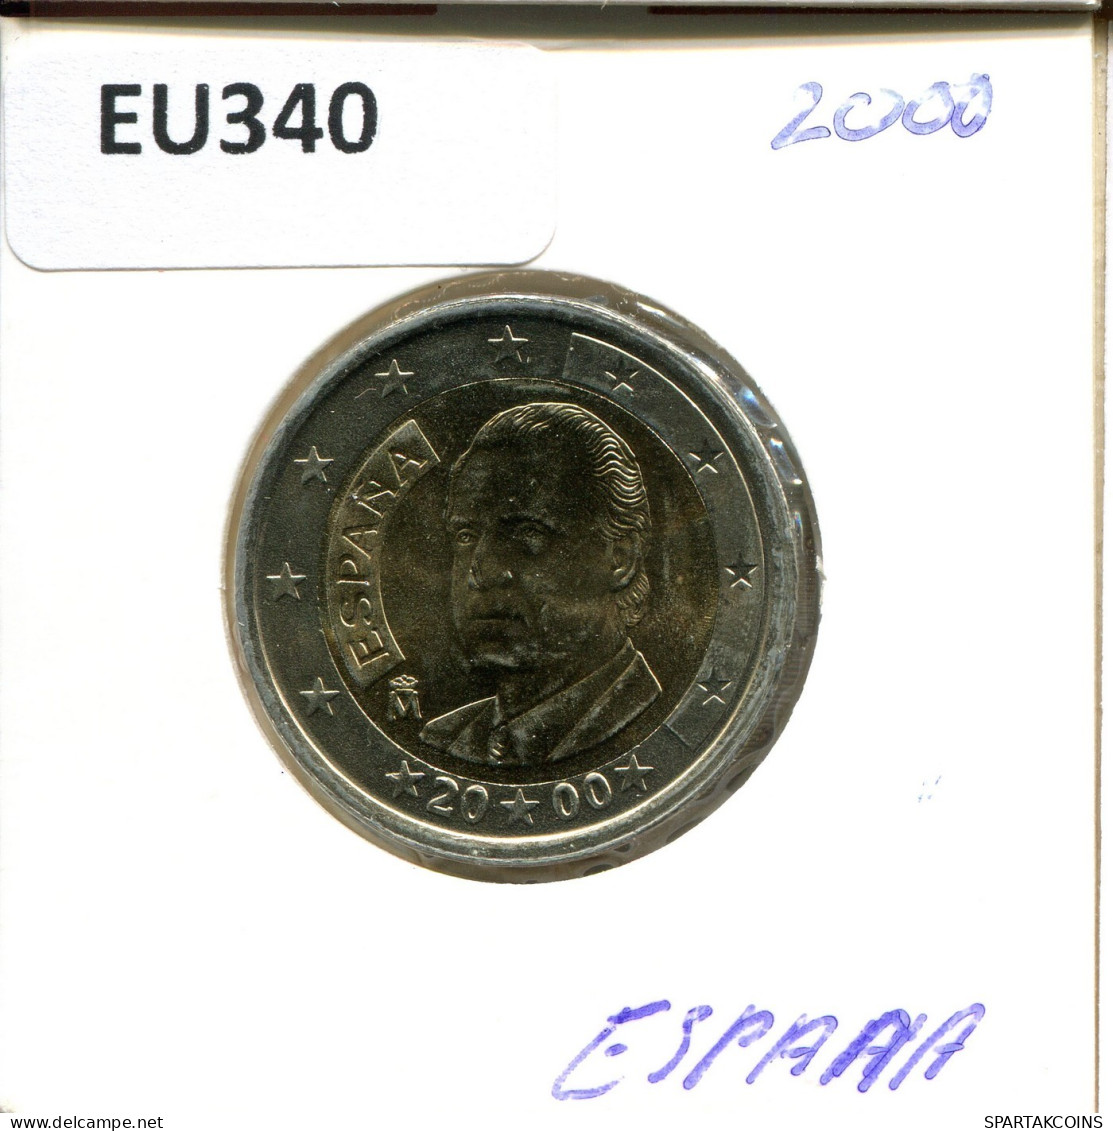 2 EURO 2000 SPAIN Coin #EU340.U.A - Spain